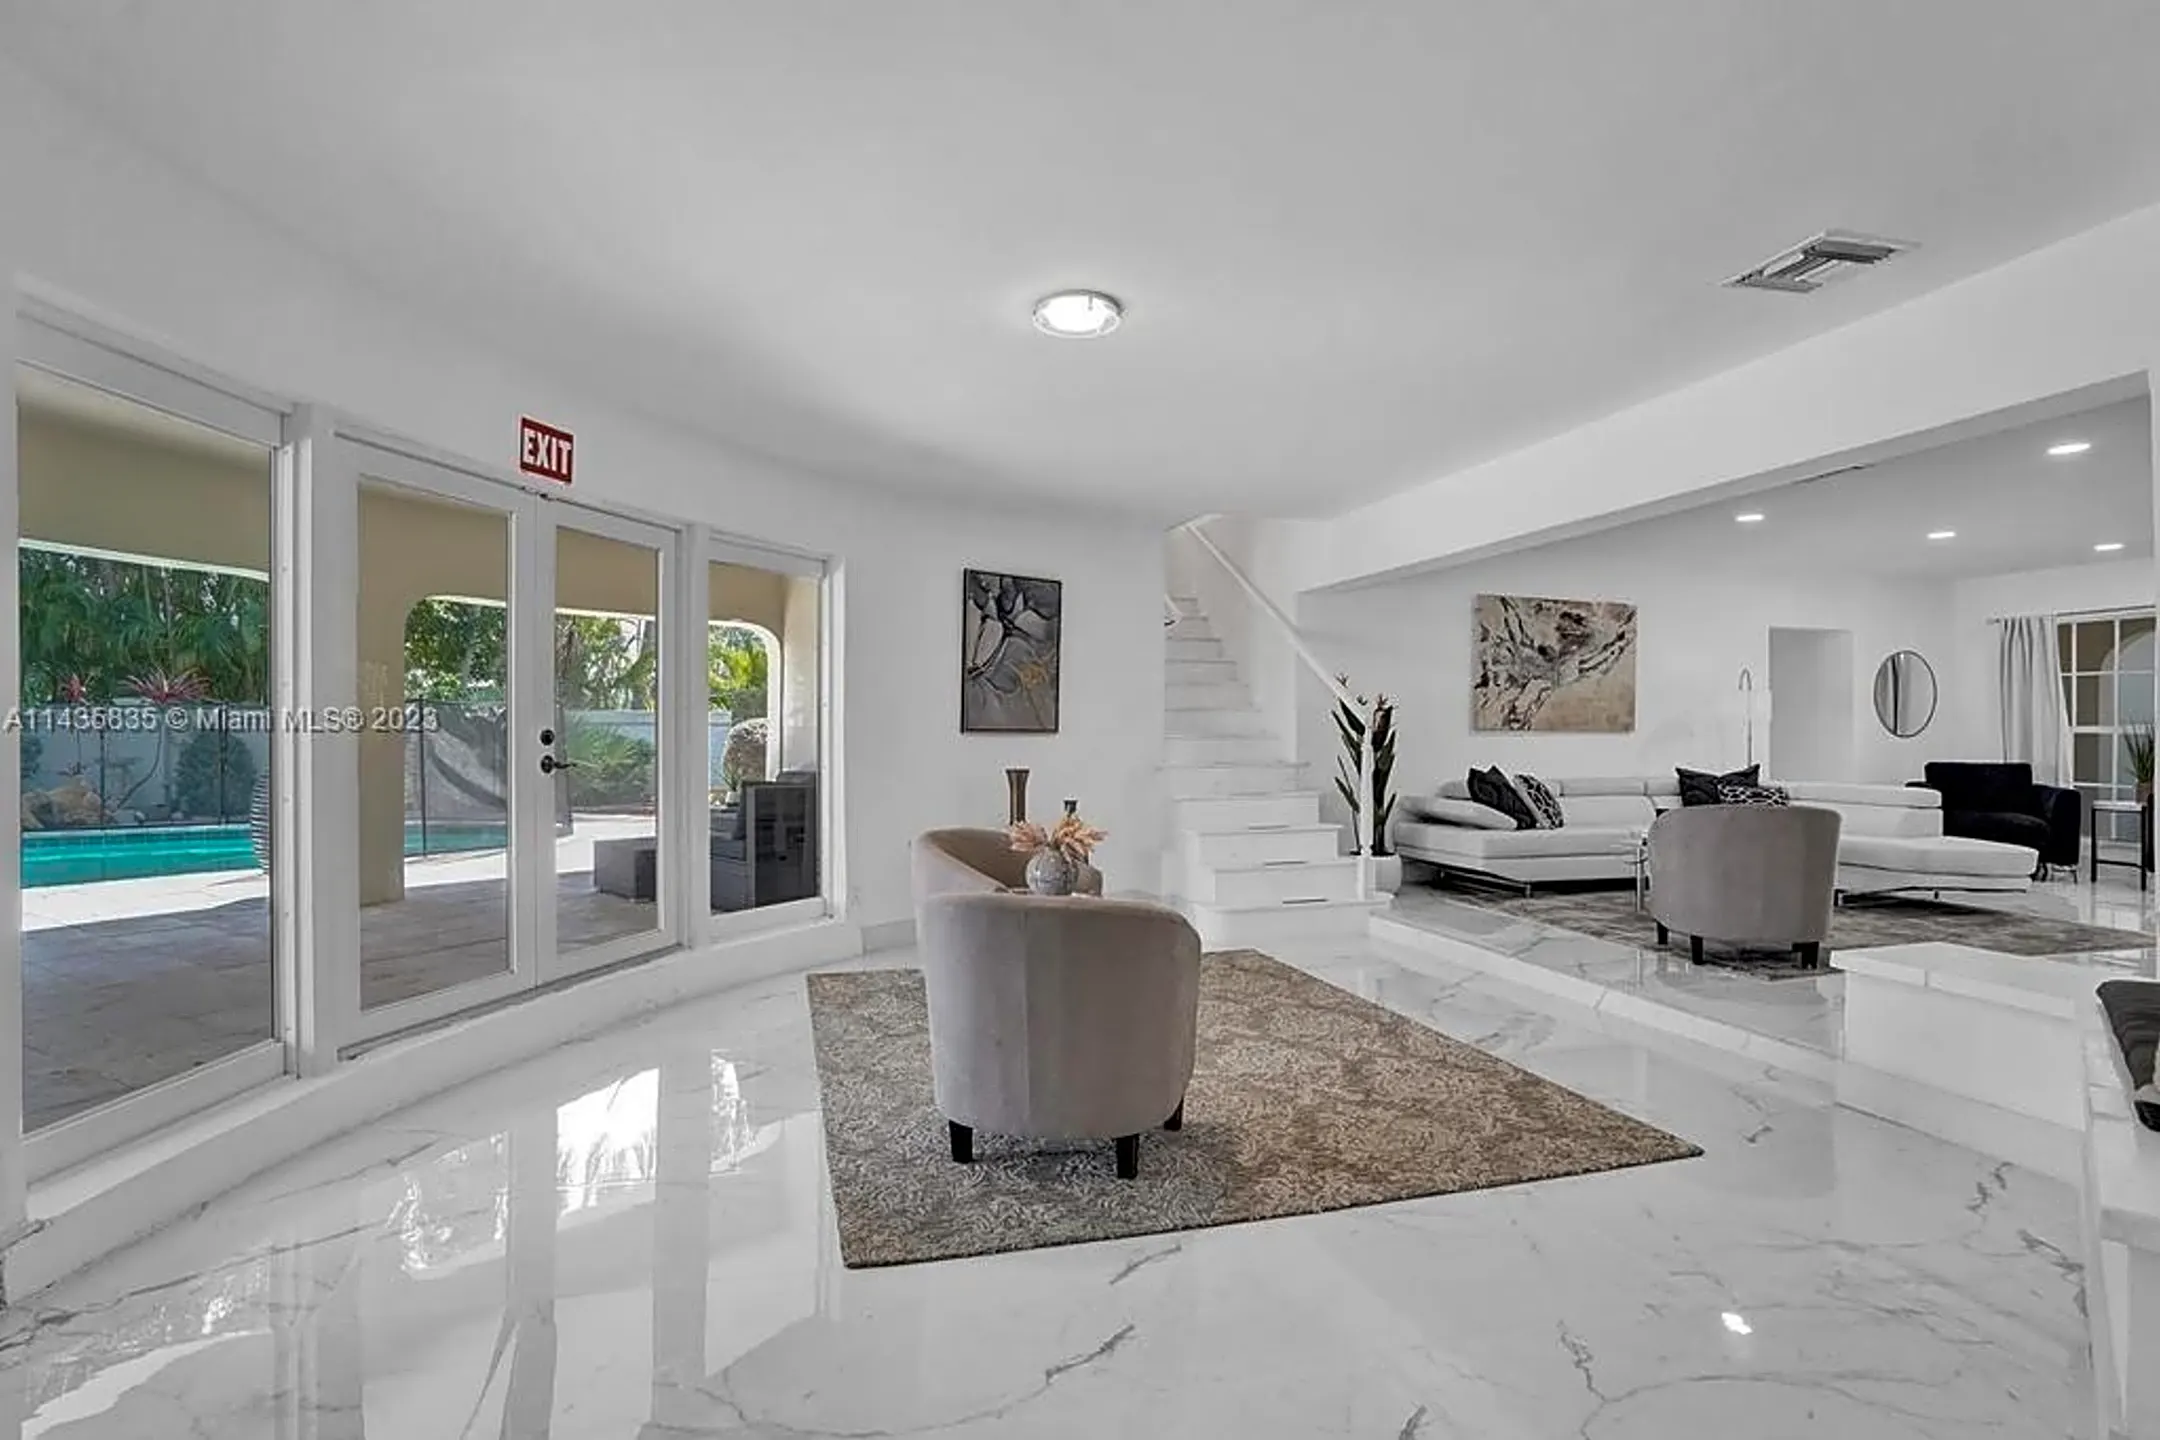 Living Room - 1809 Coral Gardens Dr - Fort Lauderdale, FL